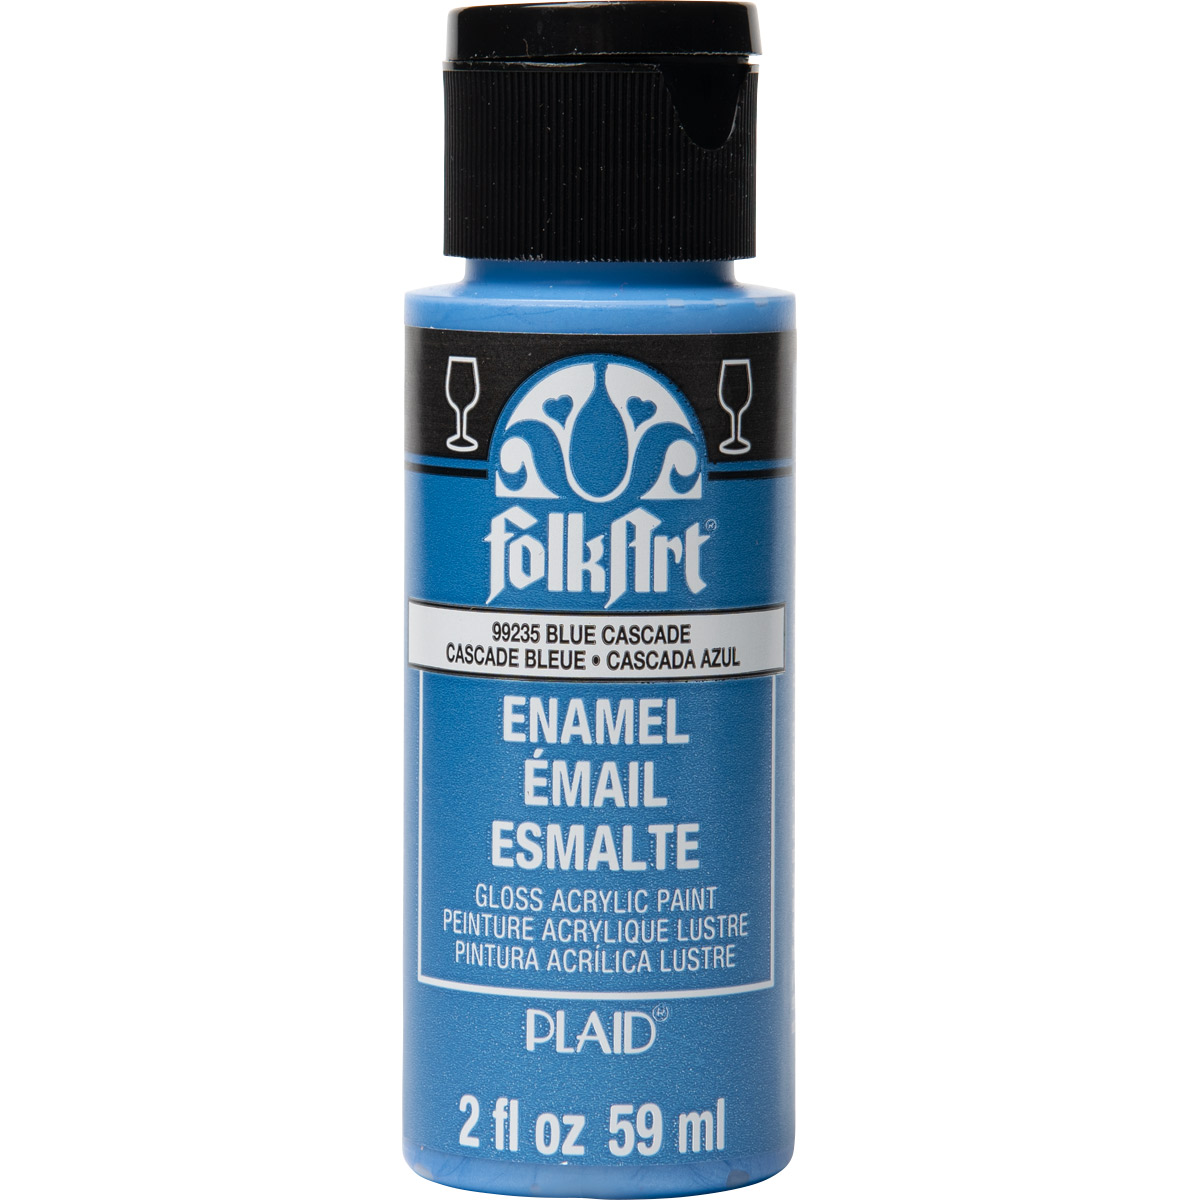 FolkArt ® Enamels™ - Metallic Blue Cascade, 2 oz. - 99235